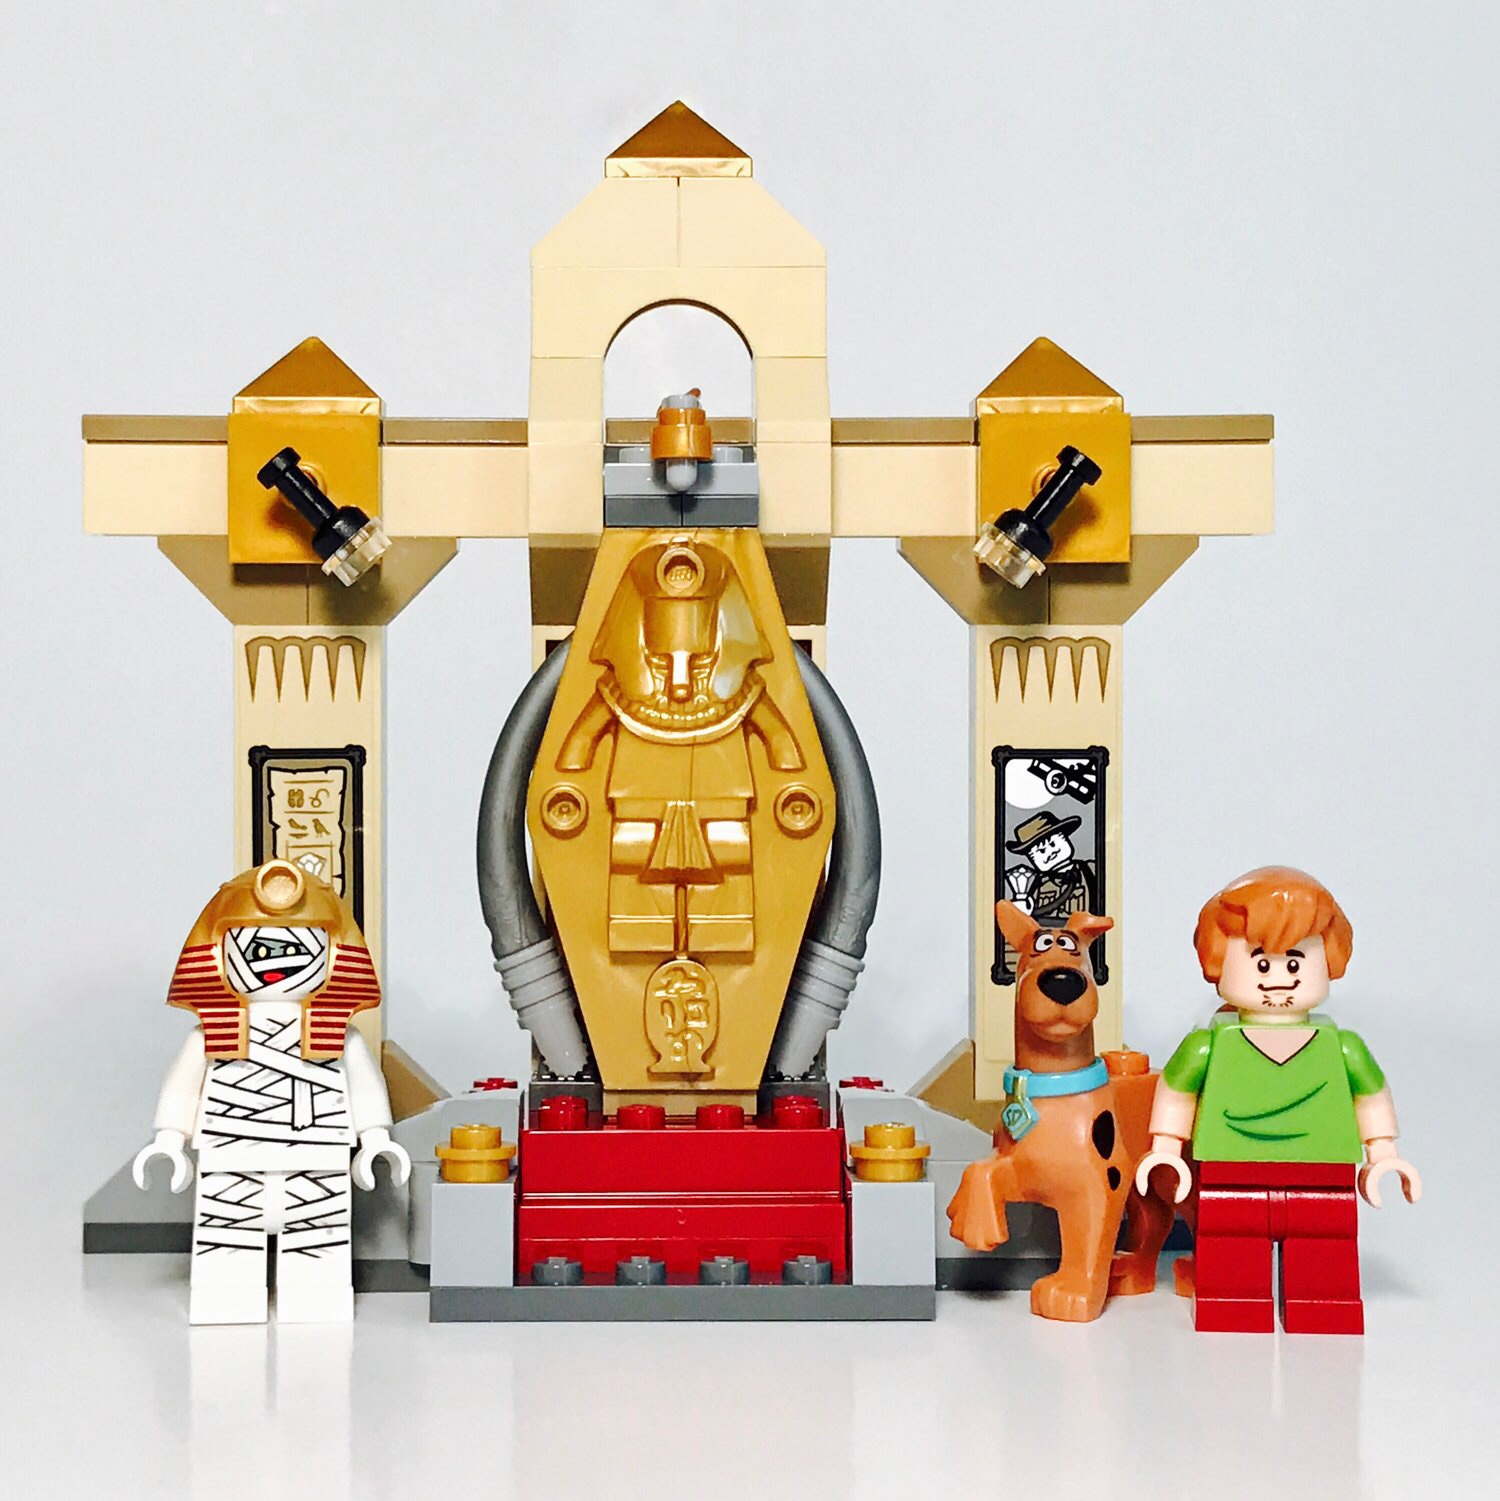 The Lego Brick Guy